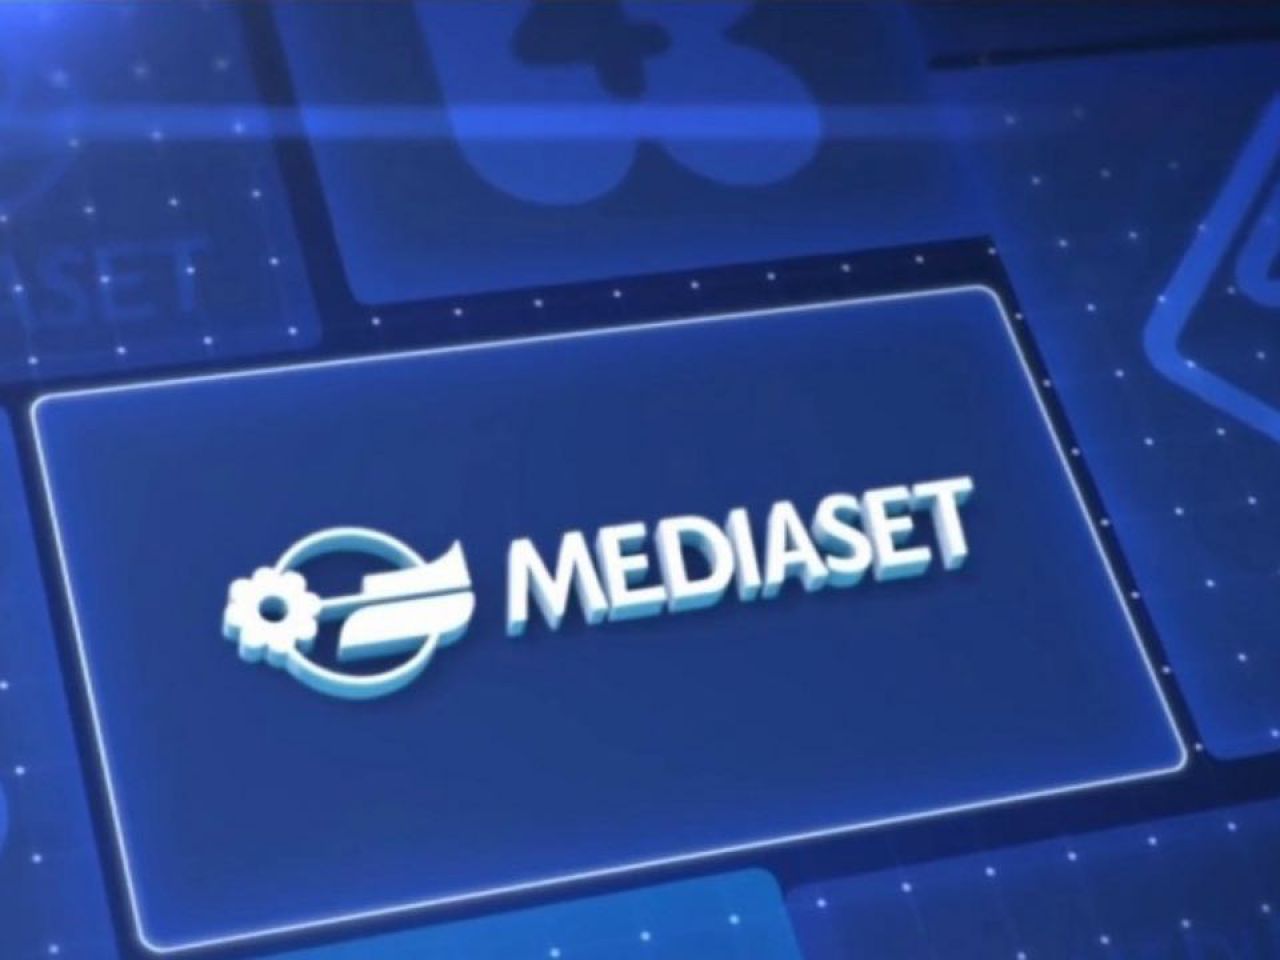 Reti Tematiche Mediaset, canali free per tutti i gusti, da scienza a sport a film 